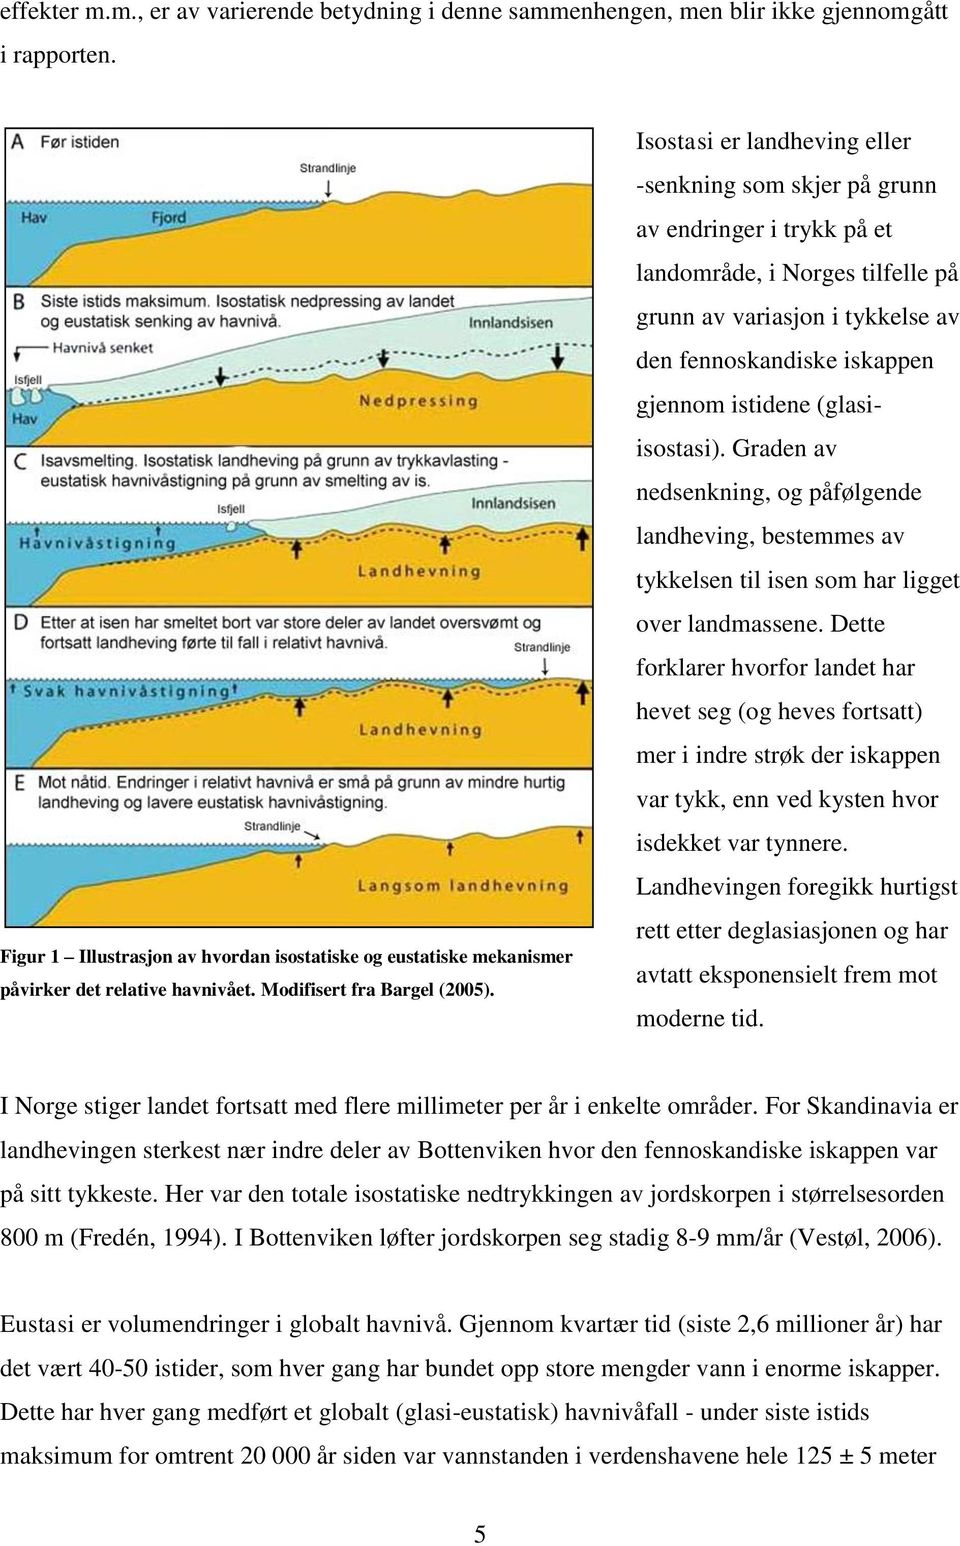 Isostasi er landheving eller -senkning som skjer på grunn av endringer i trykk på et landområde, i Norges tilfelle på grunn av variasjon i tykkelse av den fennoskandiske iskappen gjennom istidene